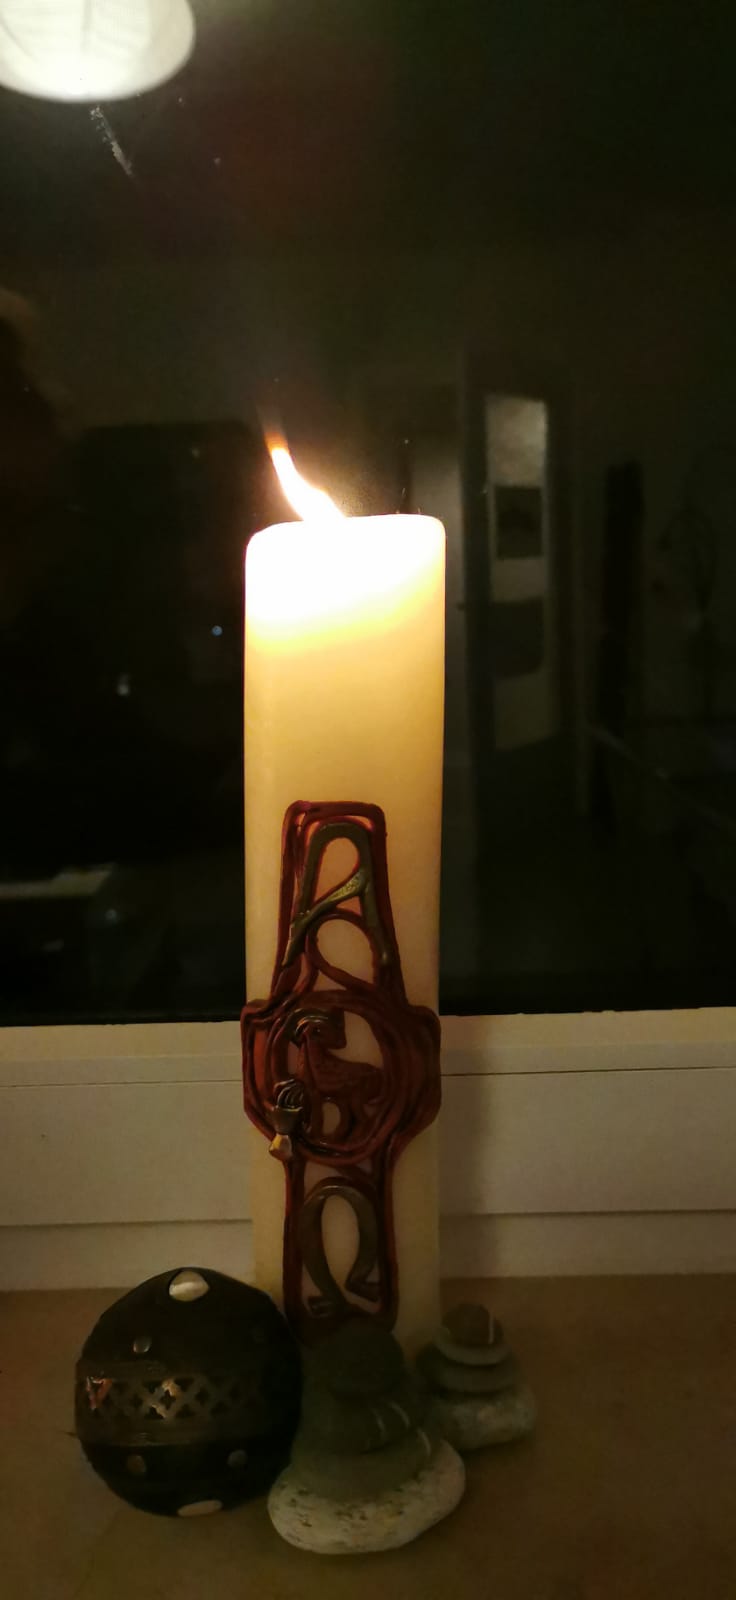 Diese Kerze, ein Geschenk vom Cousin, steht bei Maike in Friedrichsort